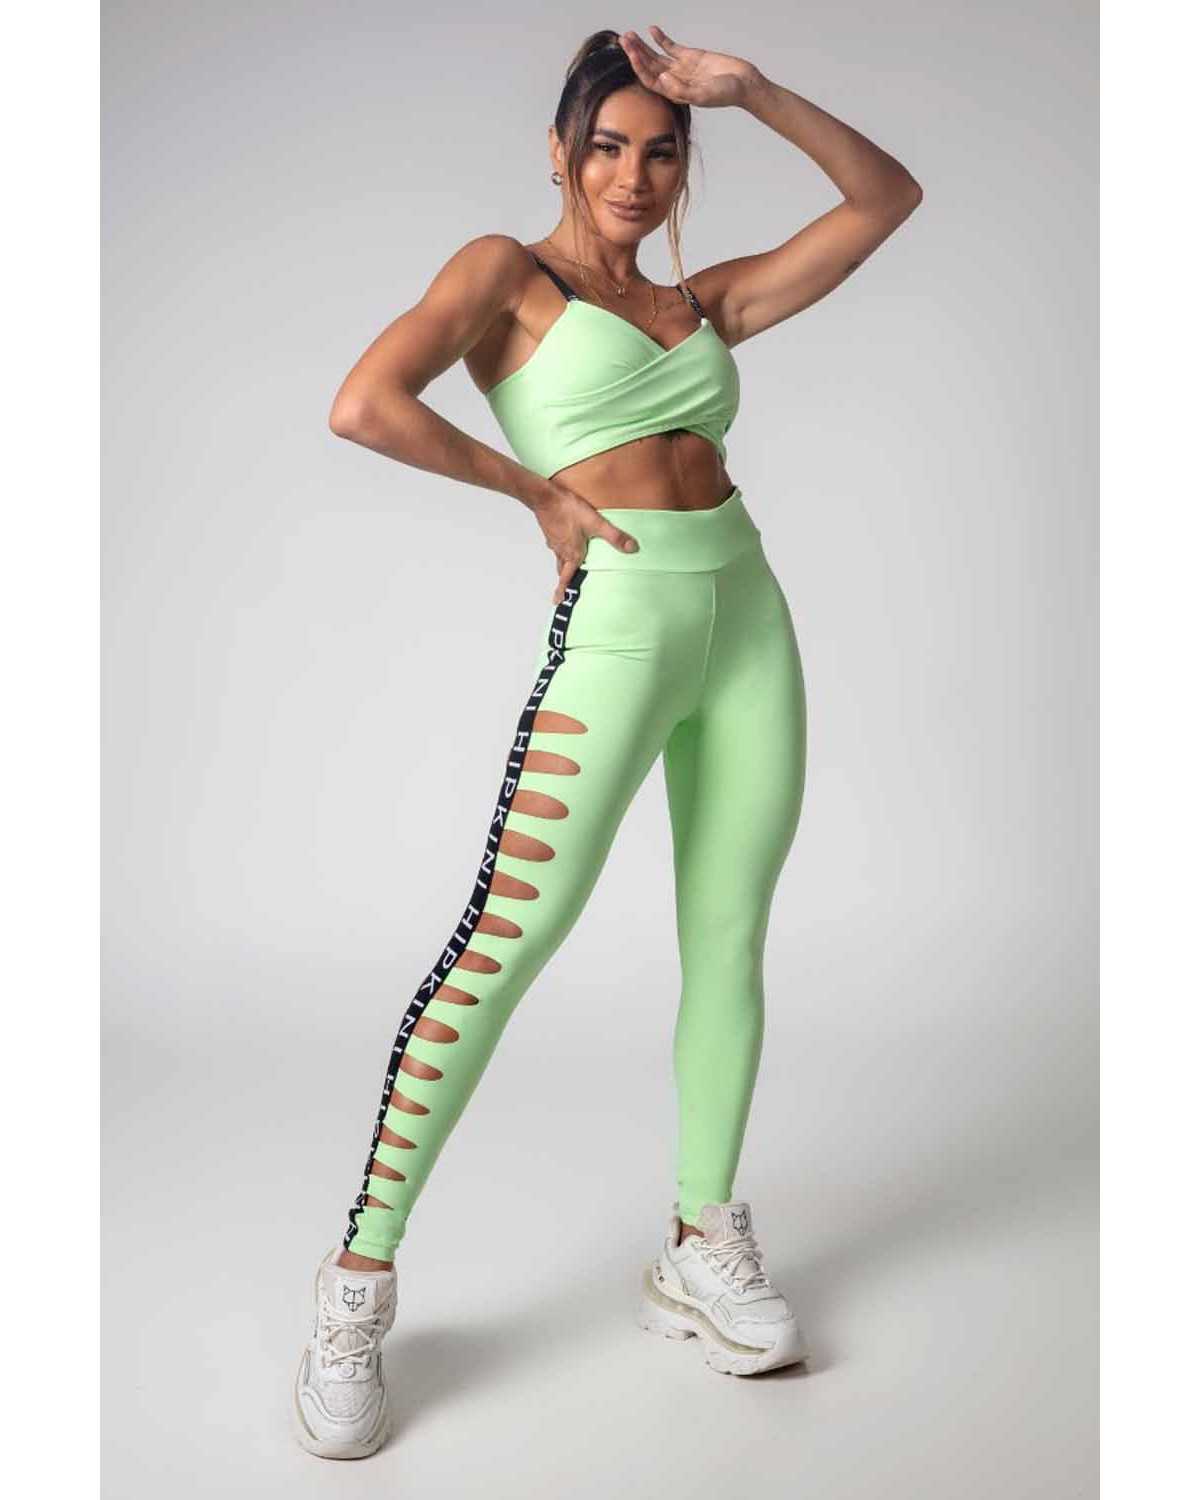 Legging Gym Girl Verde Claro com Laser